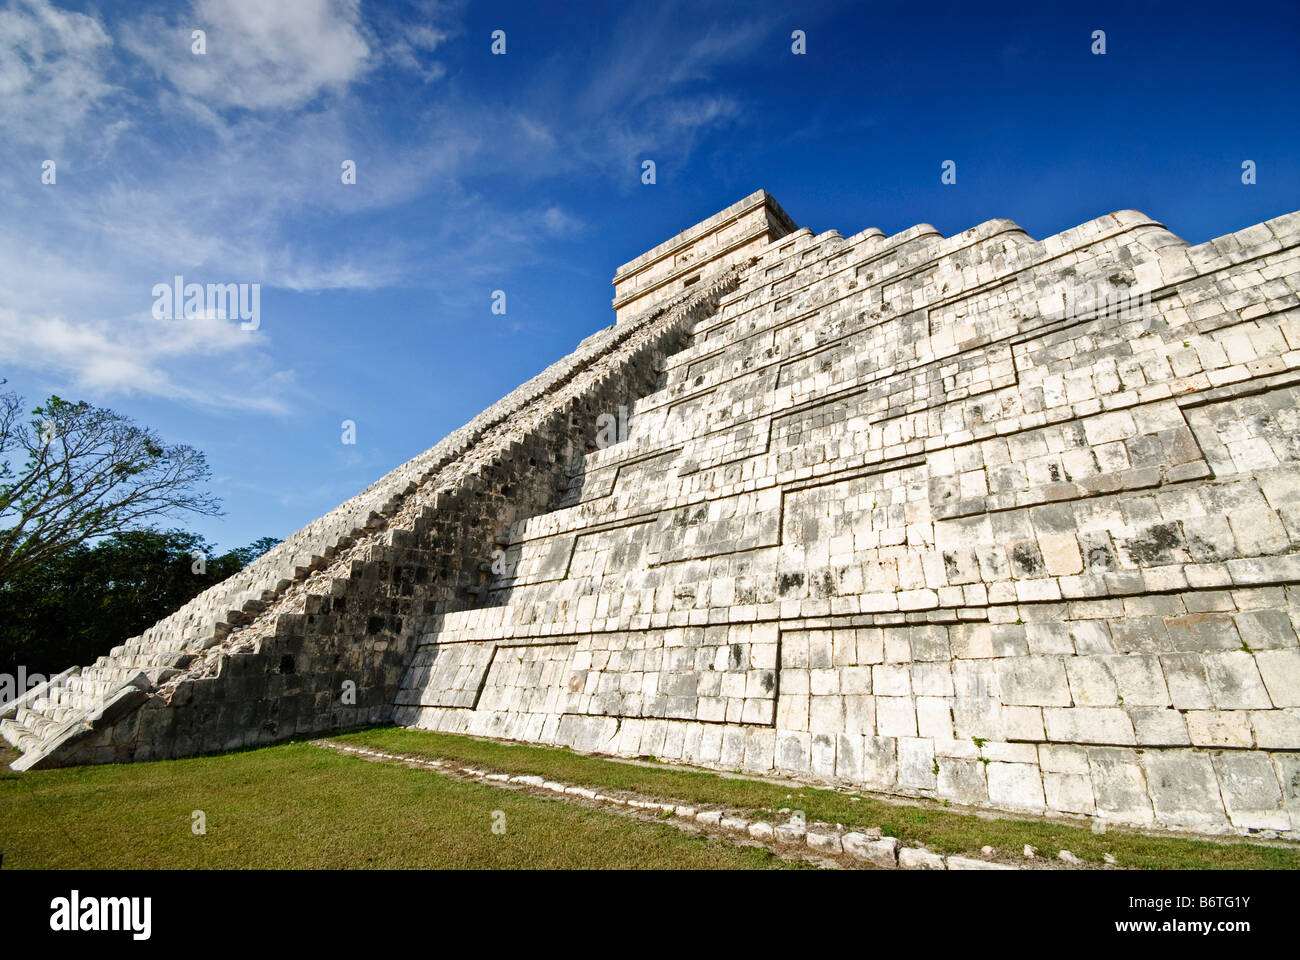 CHICHEN ITZA, Mexique - El Castillo (également connu sous le nom de Temple d'Kuklcan) à l'ancienne ruines mayas de Chichen Itza, Yucatan, Mexique 081216092714 1918x.tif Banque D'Images